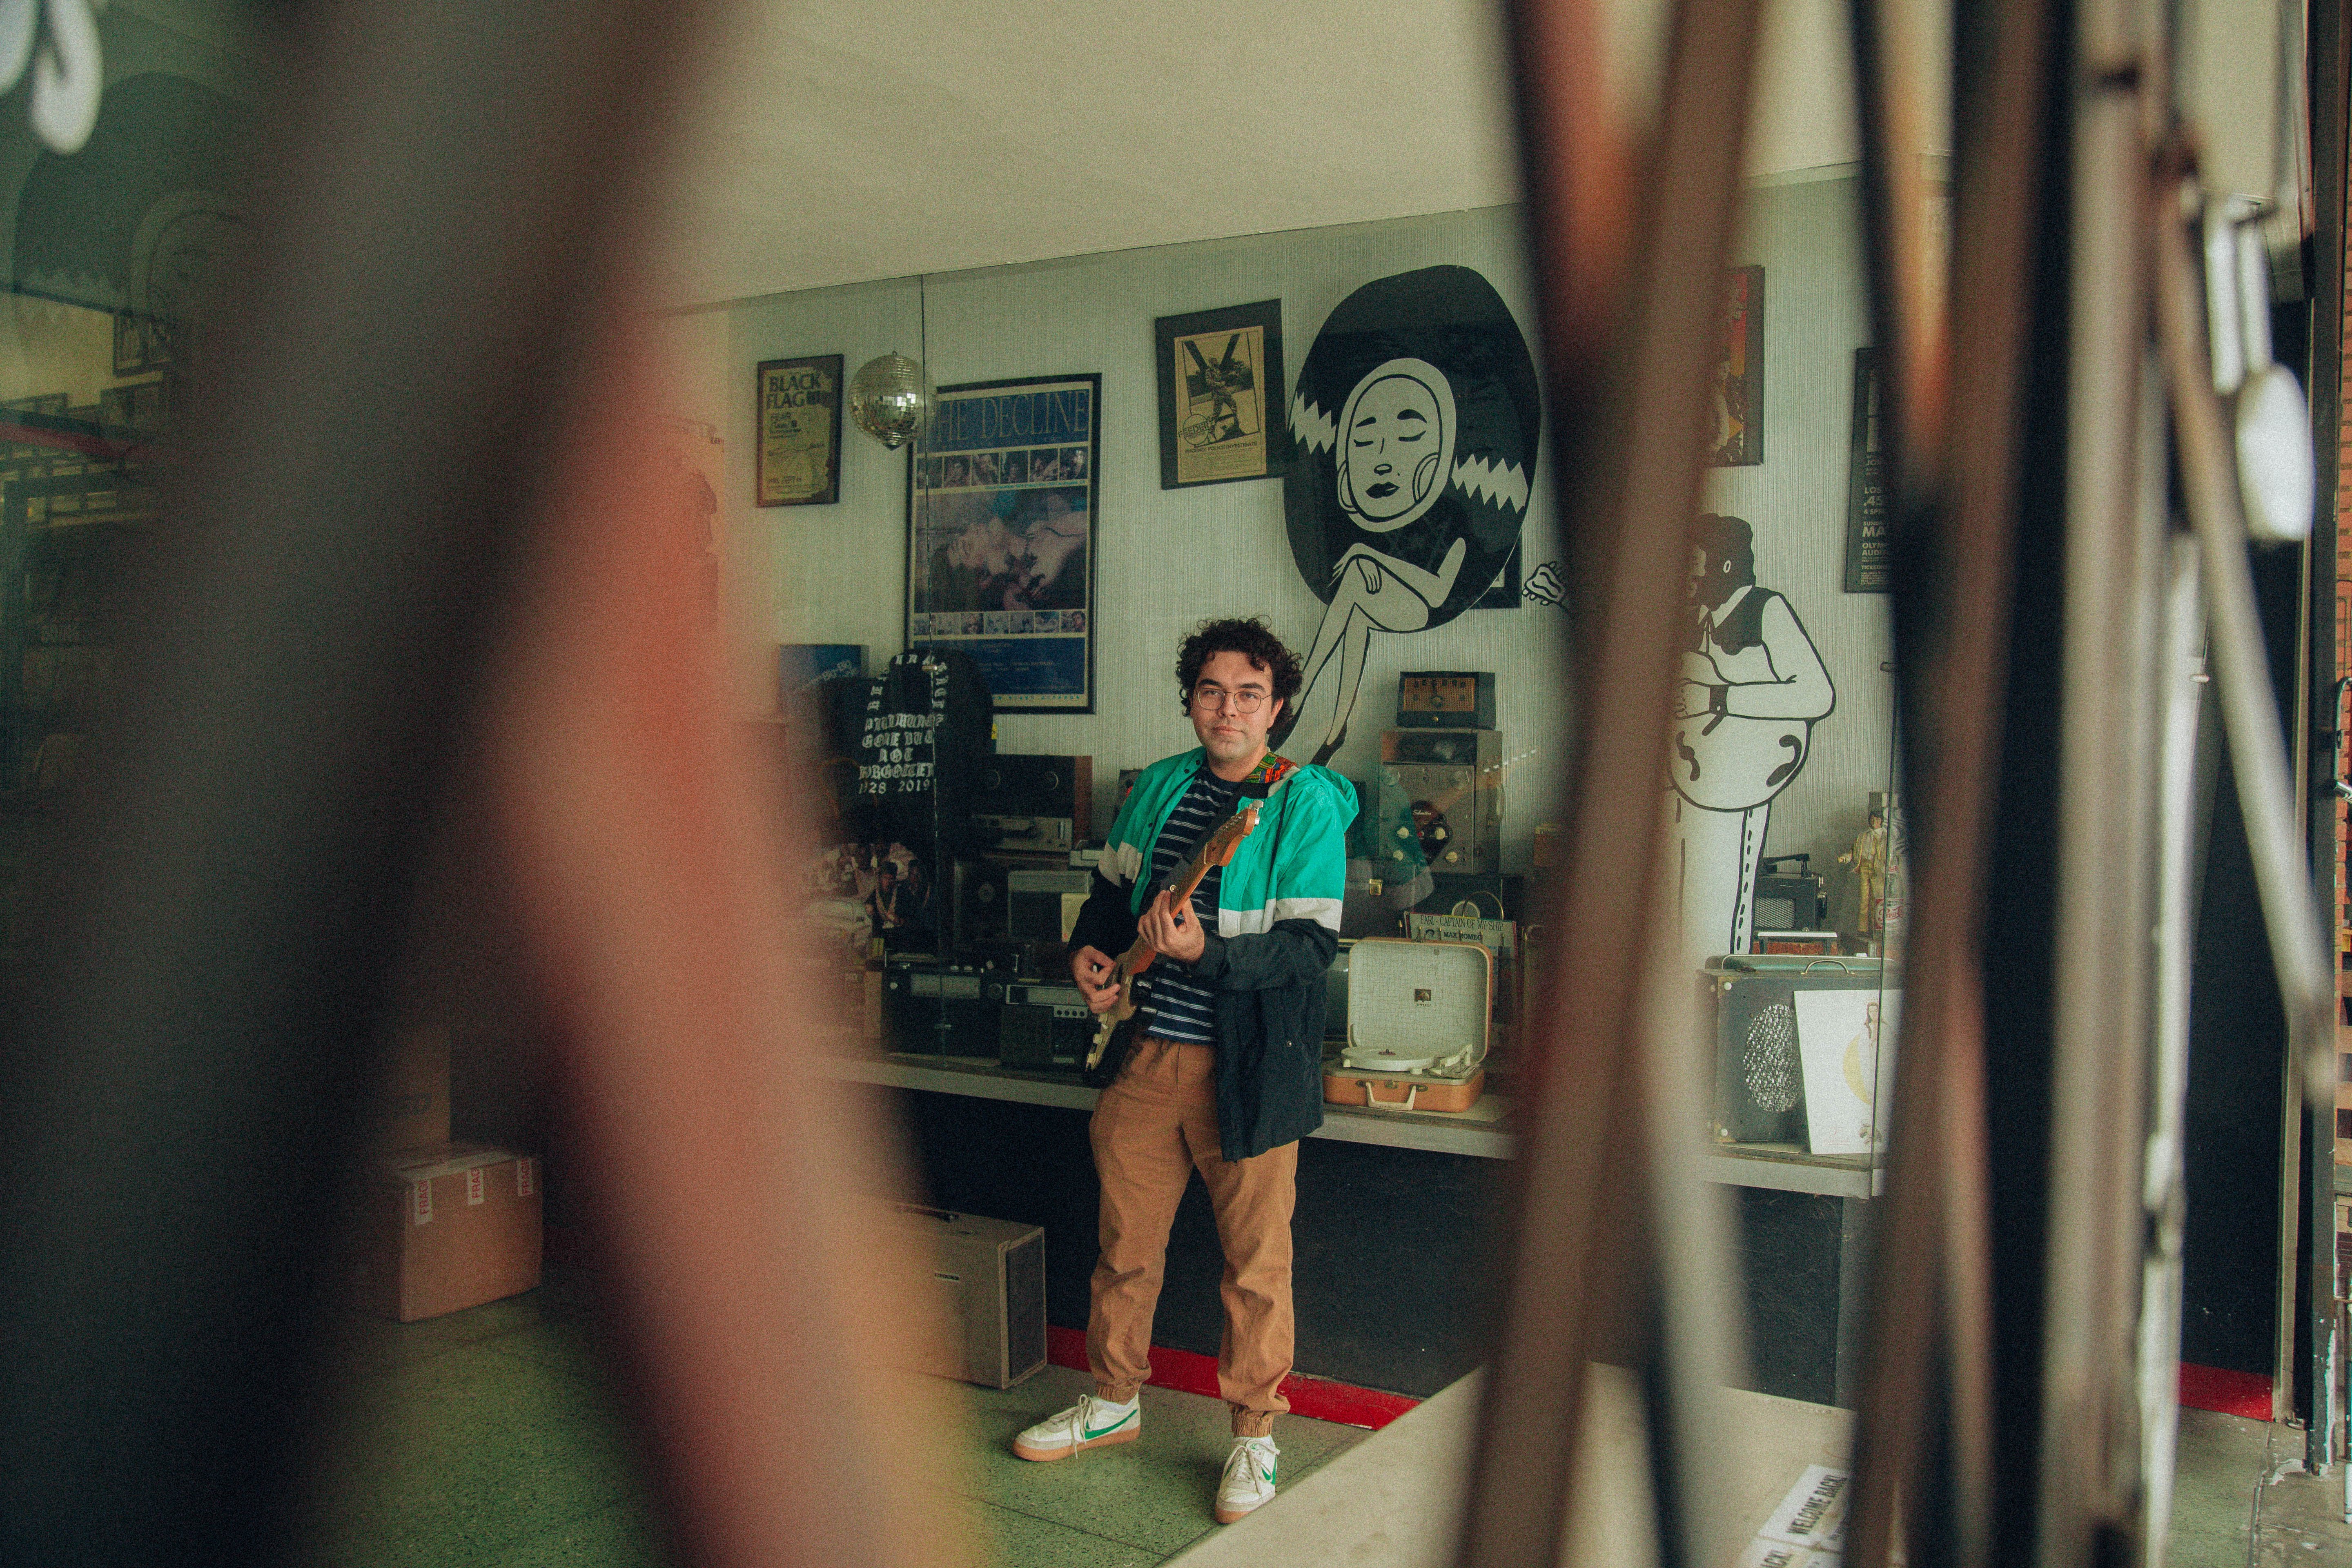 Lou Beauty plays guitar in his studio